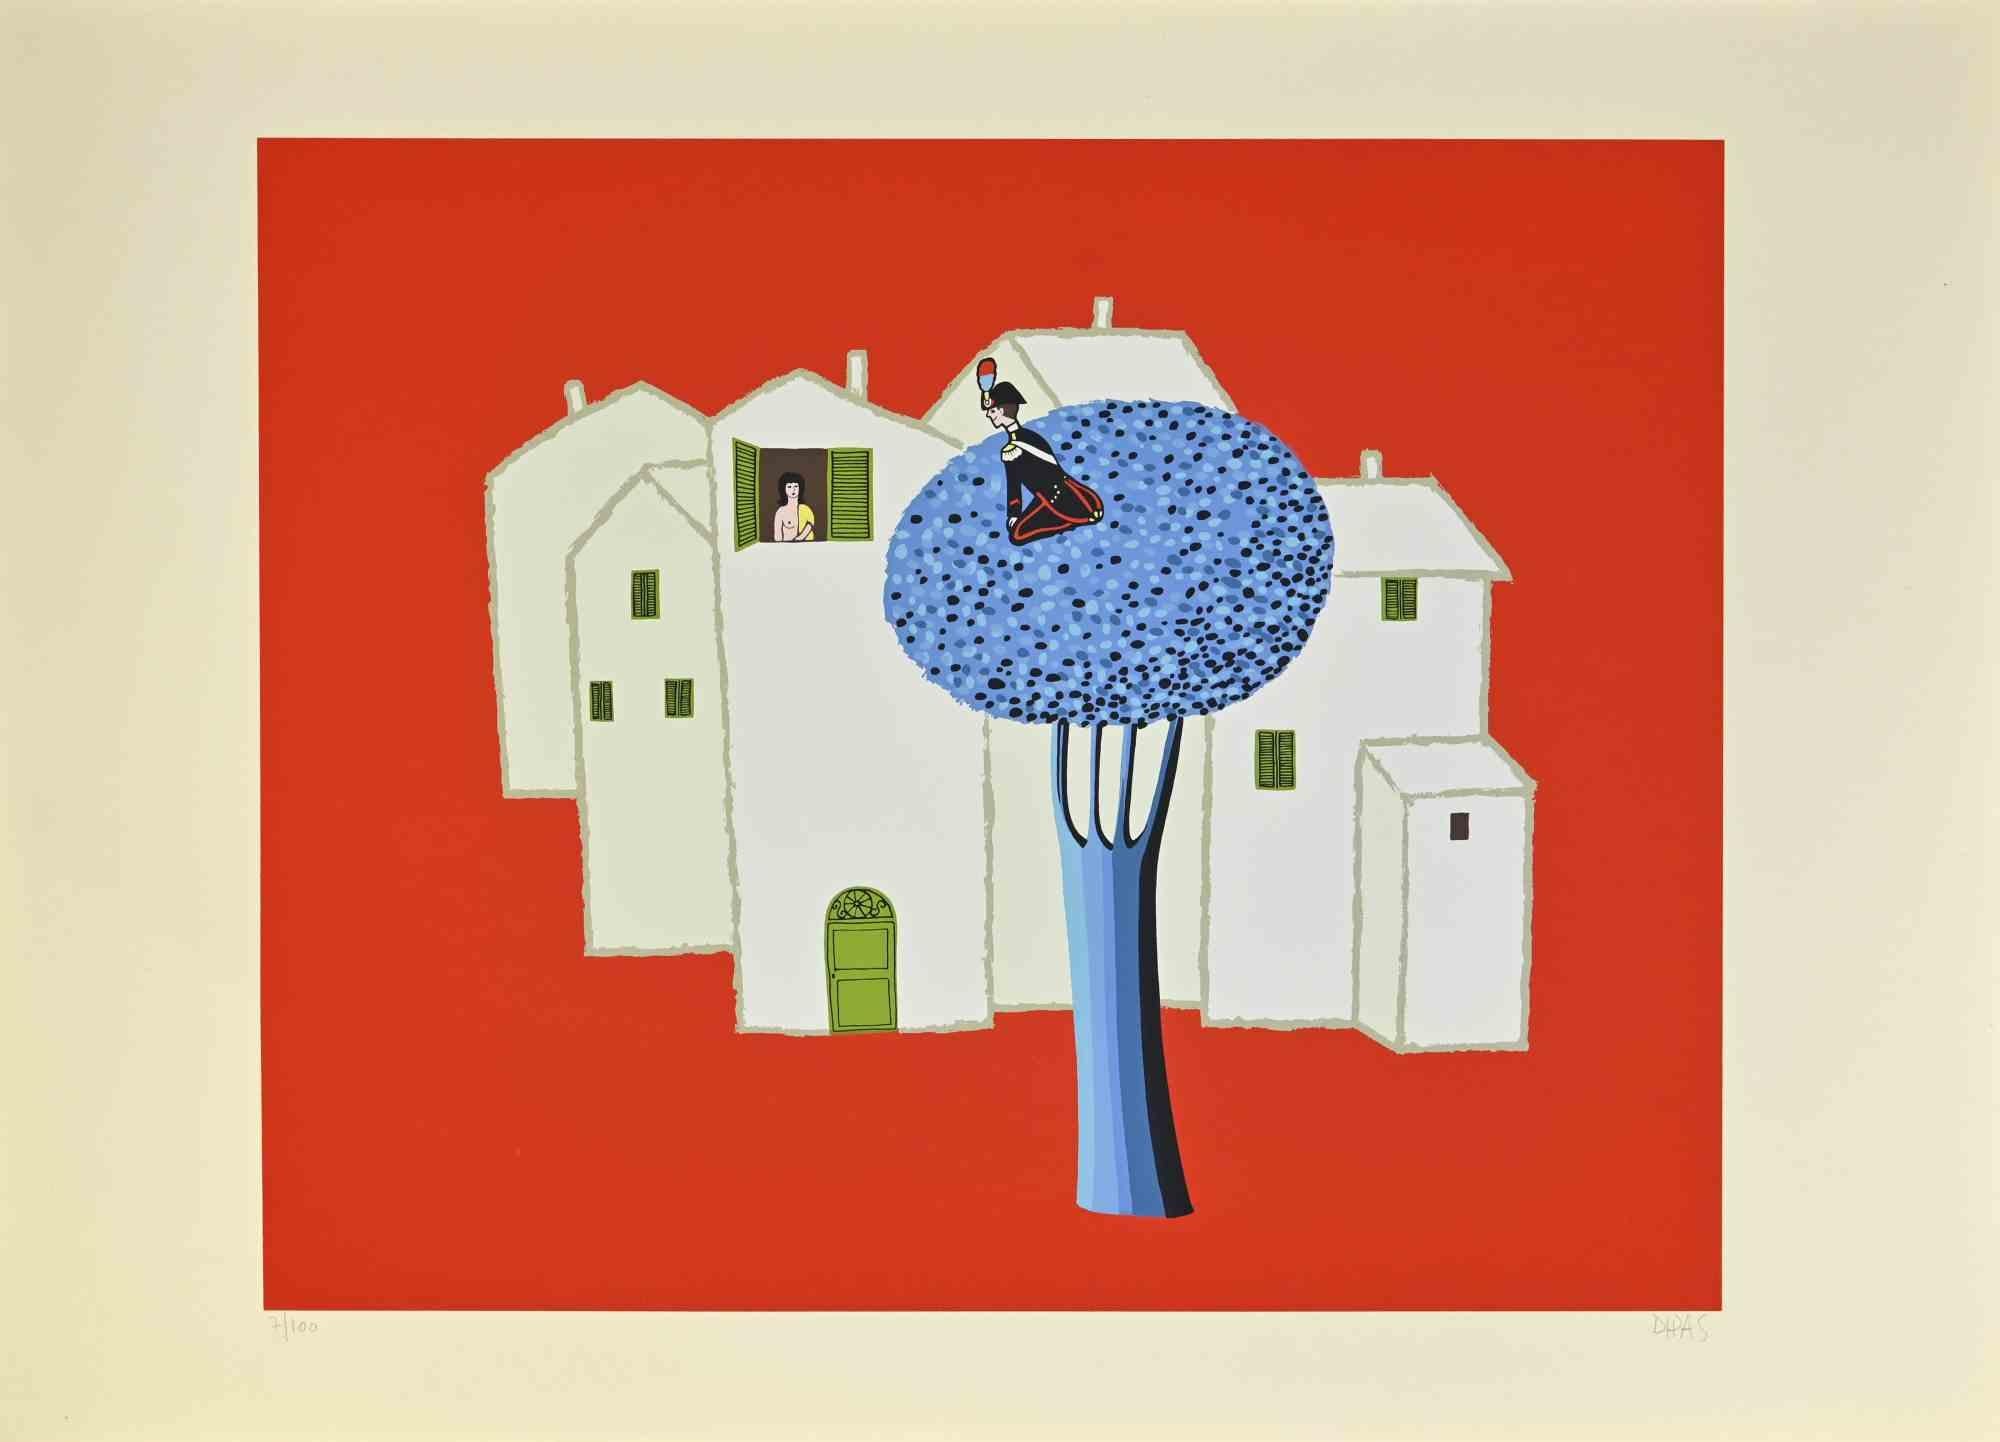 Sur l'arbre bleu est une œuvre d'art contemporain réalisée par l'artiste Dipas dans les années 1970.

Sérigraphie aux couleurs mélangées.

Signé à la main dans la marge inférieure droite.

Numéroté dans la marge inférieure gauche.

Édition de